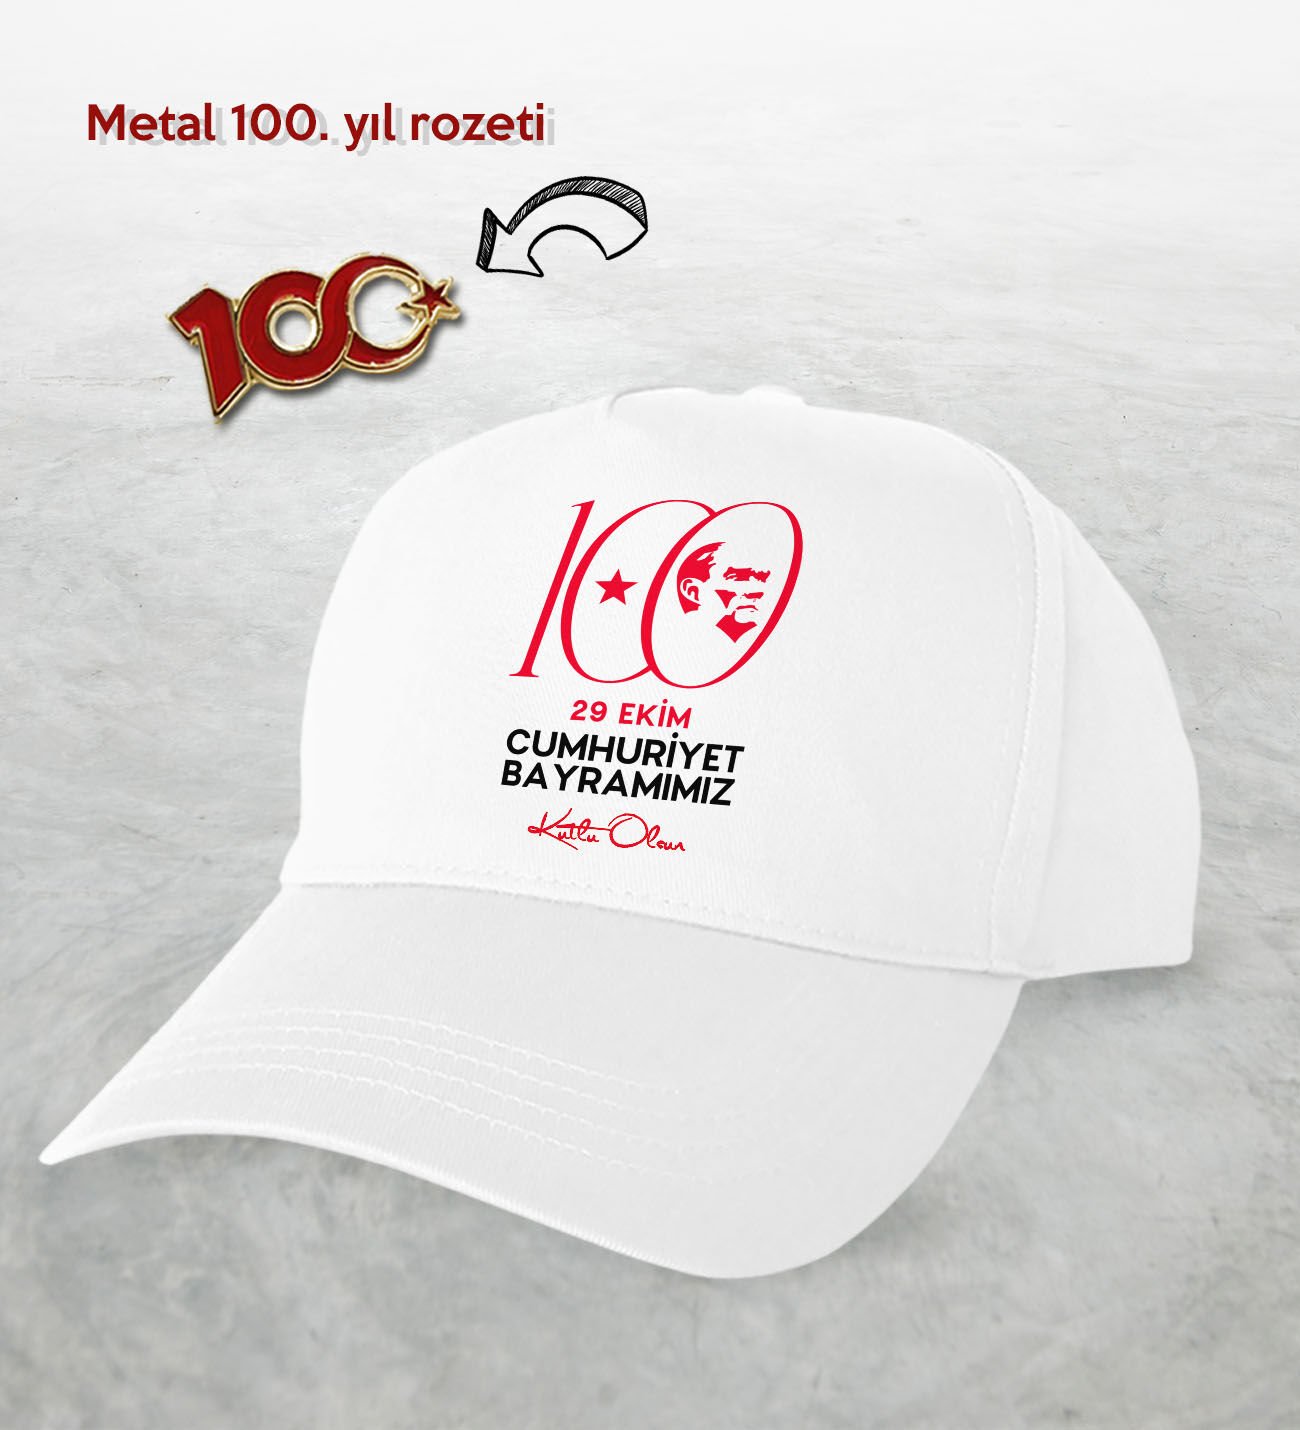 BK Gift 100. Yıl Hatırası Beyaz Şapka ve Gold Metal Rozet Hediye Seti-4, 29 Ekim Hediyesi, Cumhuriyet Bayramı, 100.Yıl Hediyesi